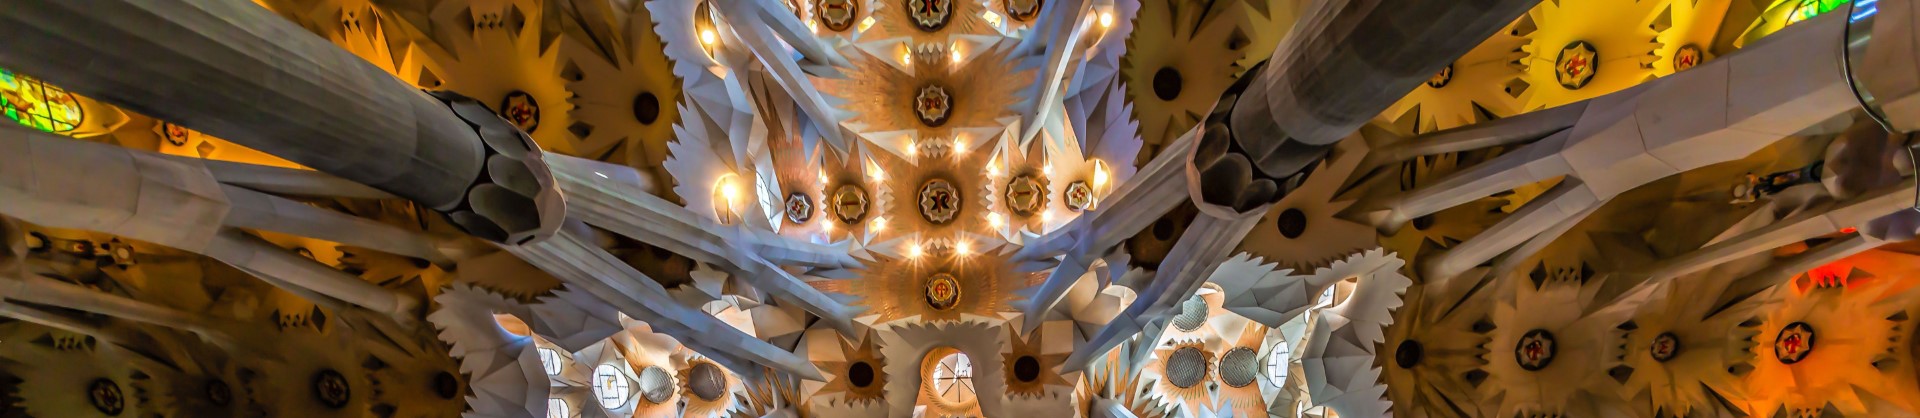 Explore Gaudí's Iconic Buildings